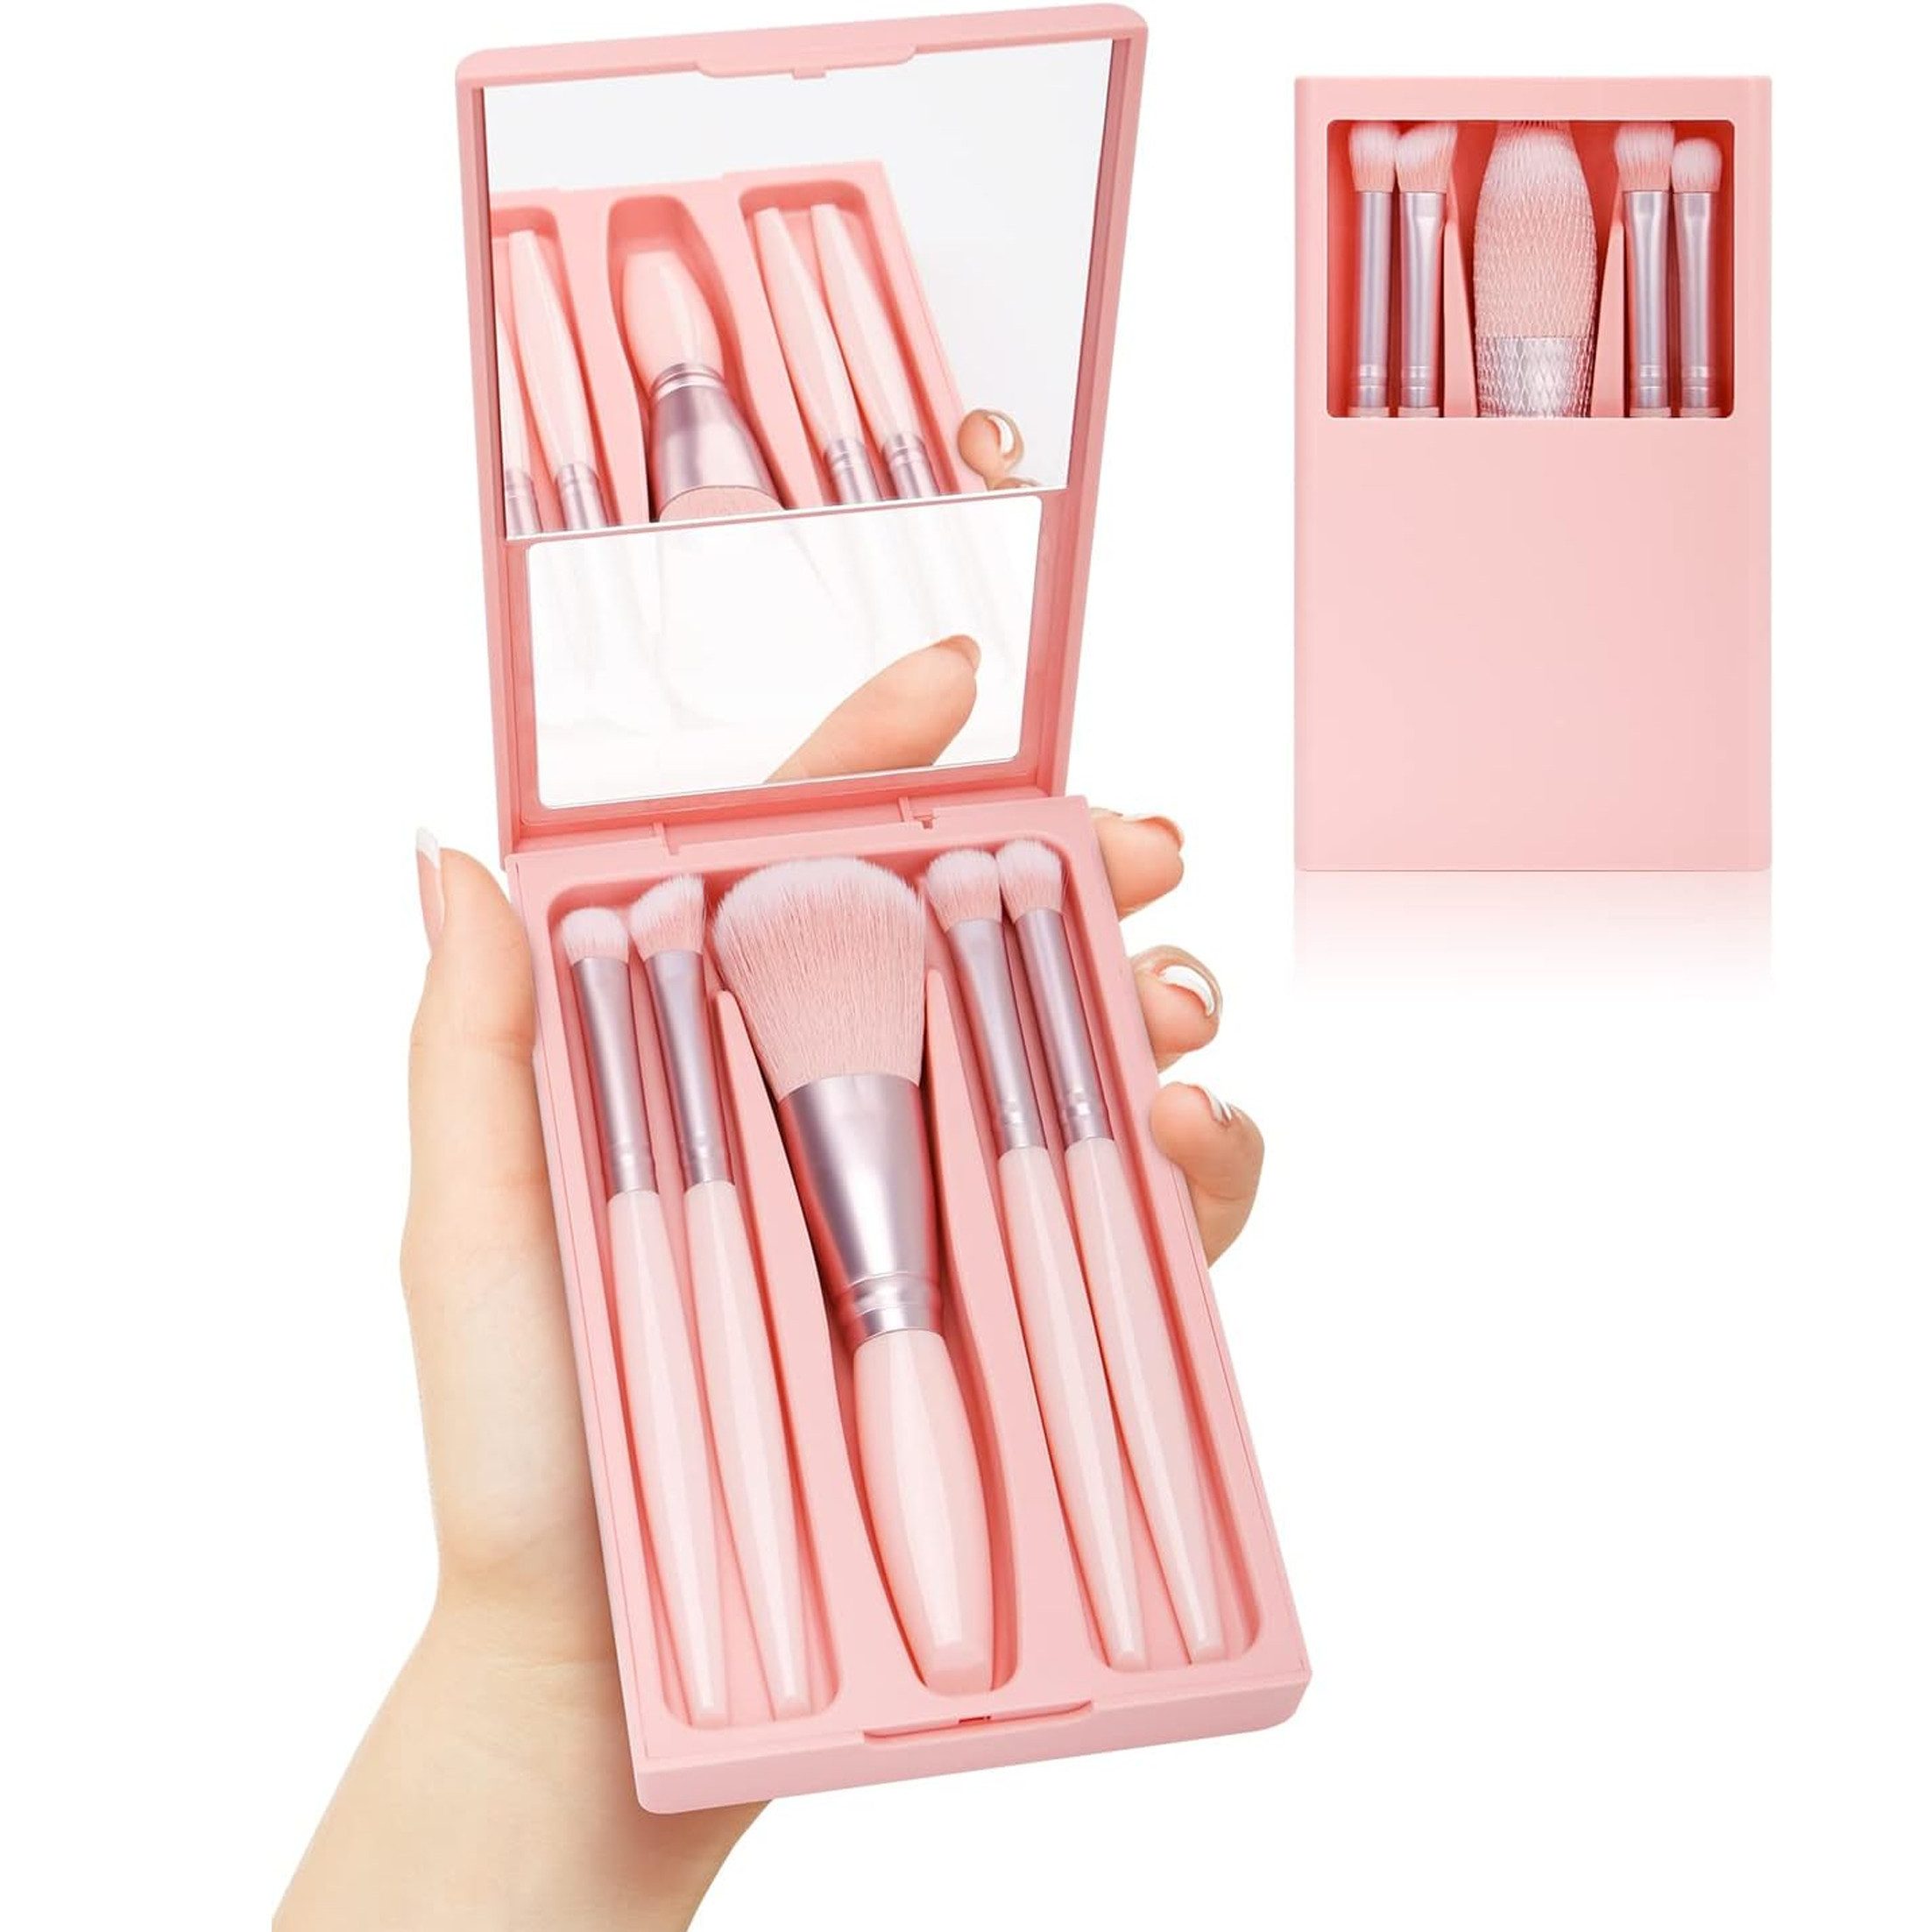 Scheiffy Kosmetikpinsel-Set Makeup-Pinsel mit Spiegel,5 Stück,Multifunktionale Makeup-Werkzeug-Set